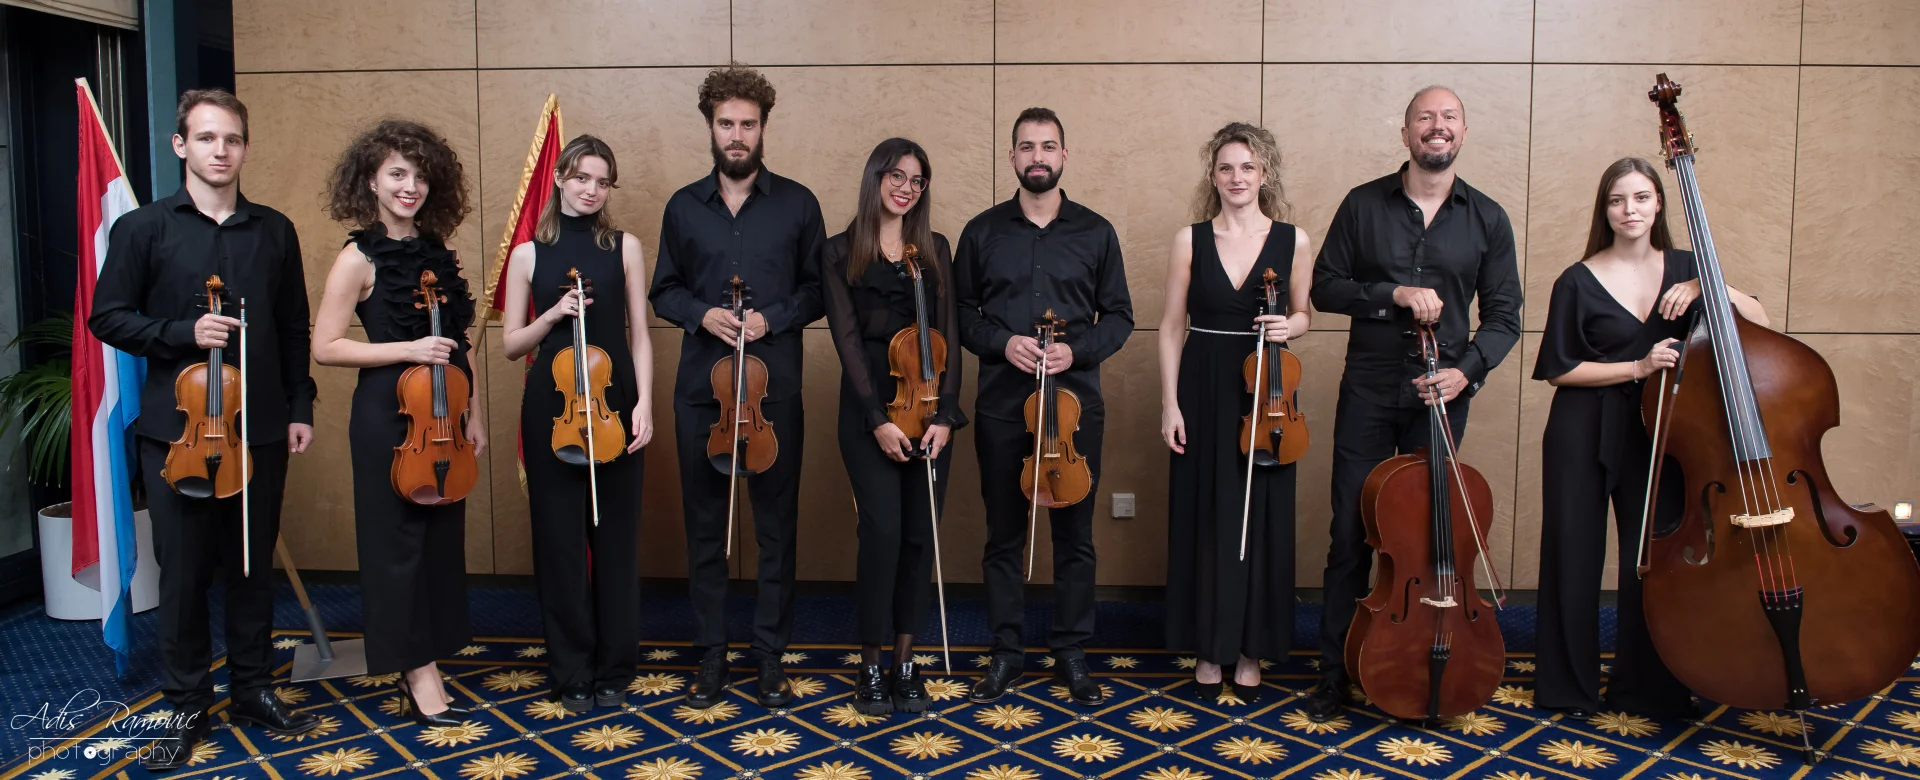 Crnogorski orkestar mladih održao nezaboravan koncert u Luksemburgu